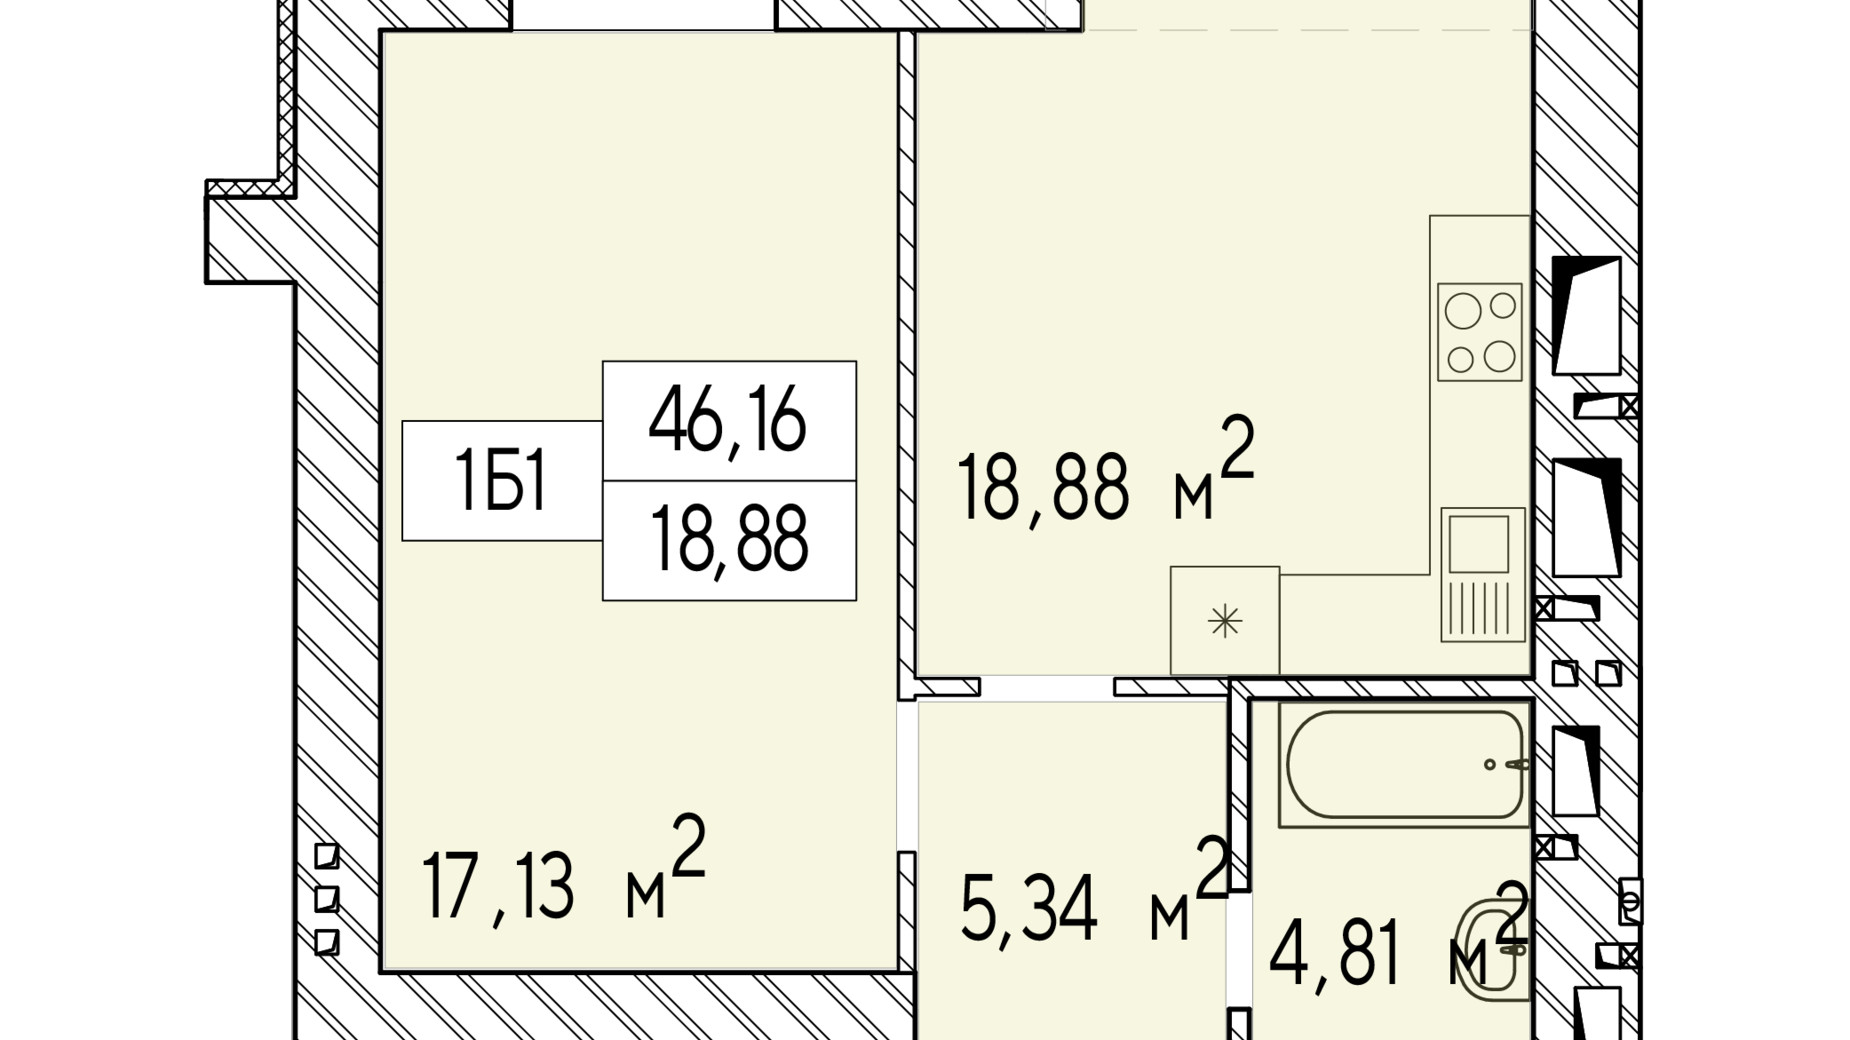 Планировка 1-комнатной квартиры в ЖК Фаворит Premium 46.16 м², фото 548429